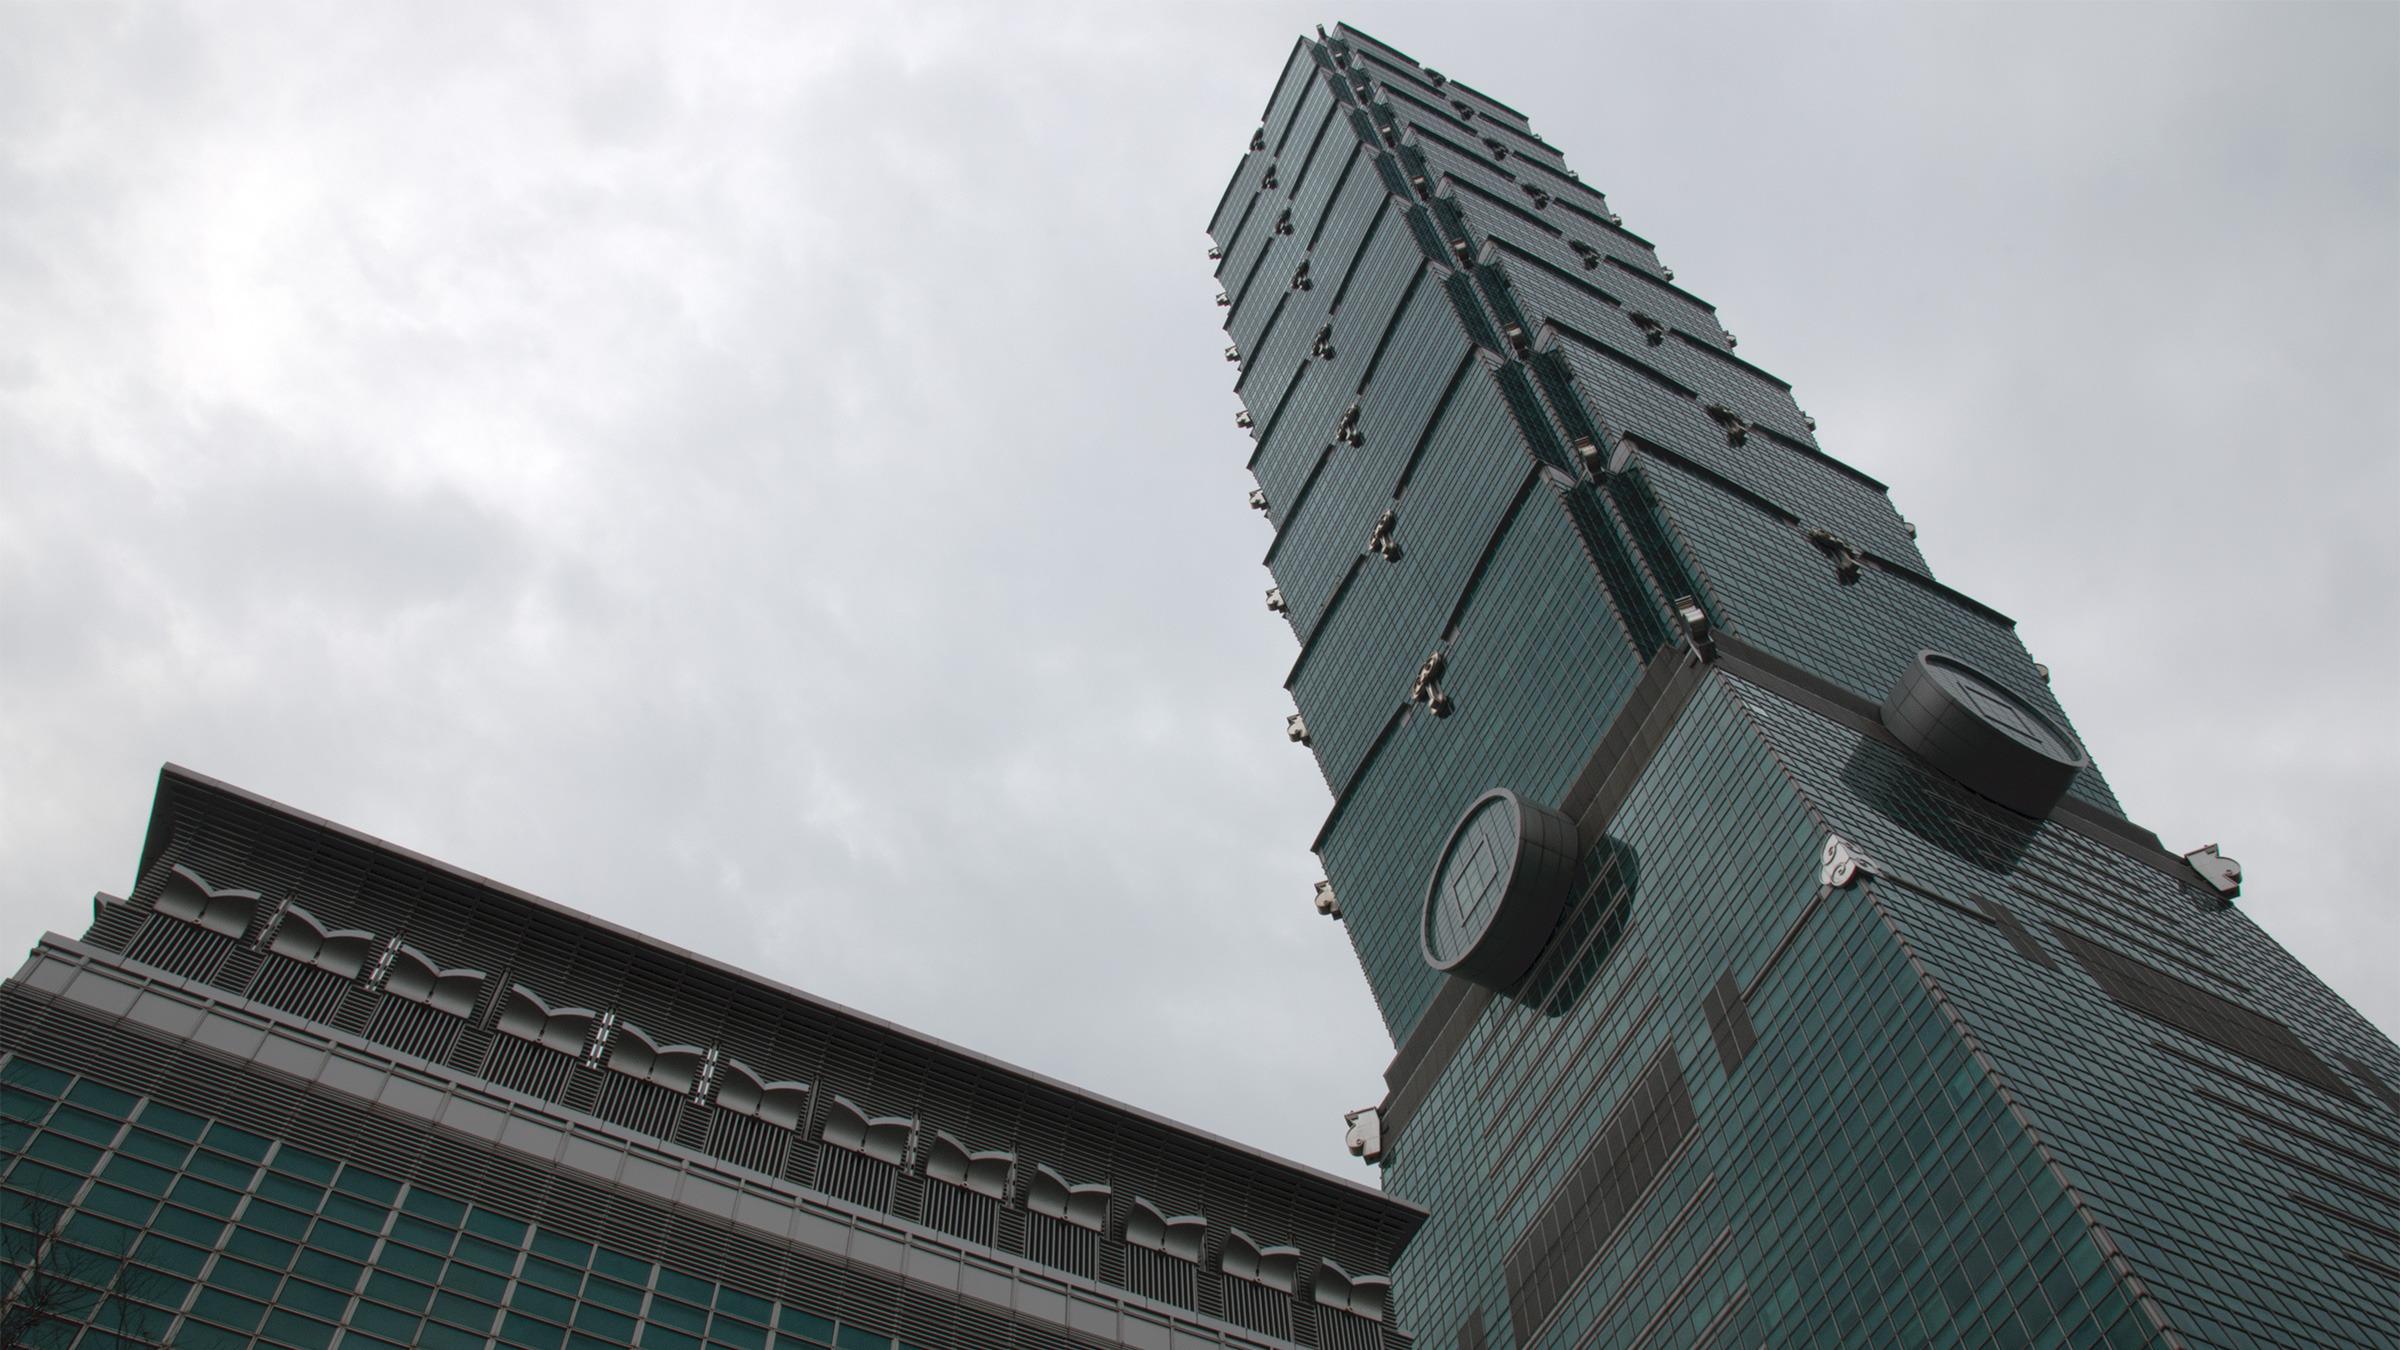 Da Taipei 101 sto ferdig i 2004 var den verdens høyeste skyskraper – en tittel den kunne smykke seg med frem til 2010. Mange andre tårn er designet slik at de blir tynnere og tynnere oppover, som fremkaller et optisk bedrag og får dem til å virke mye høyere. Taipei 101 er nesten designet litt motsatt, ettersom mesteparten av tårnet består av åtte segmenter som er tynnere nederst enn øverst. Dermed kan man bli lurt til å tro at tårnet er kortere enn det faktisk er, i alle fall til man kommer opp i høyden.Foto: Varg Aamo, Hardware.no